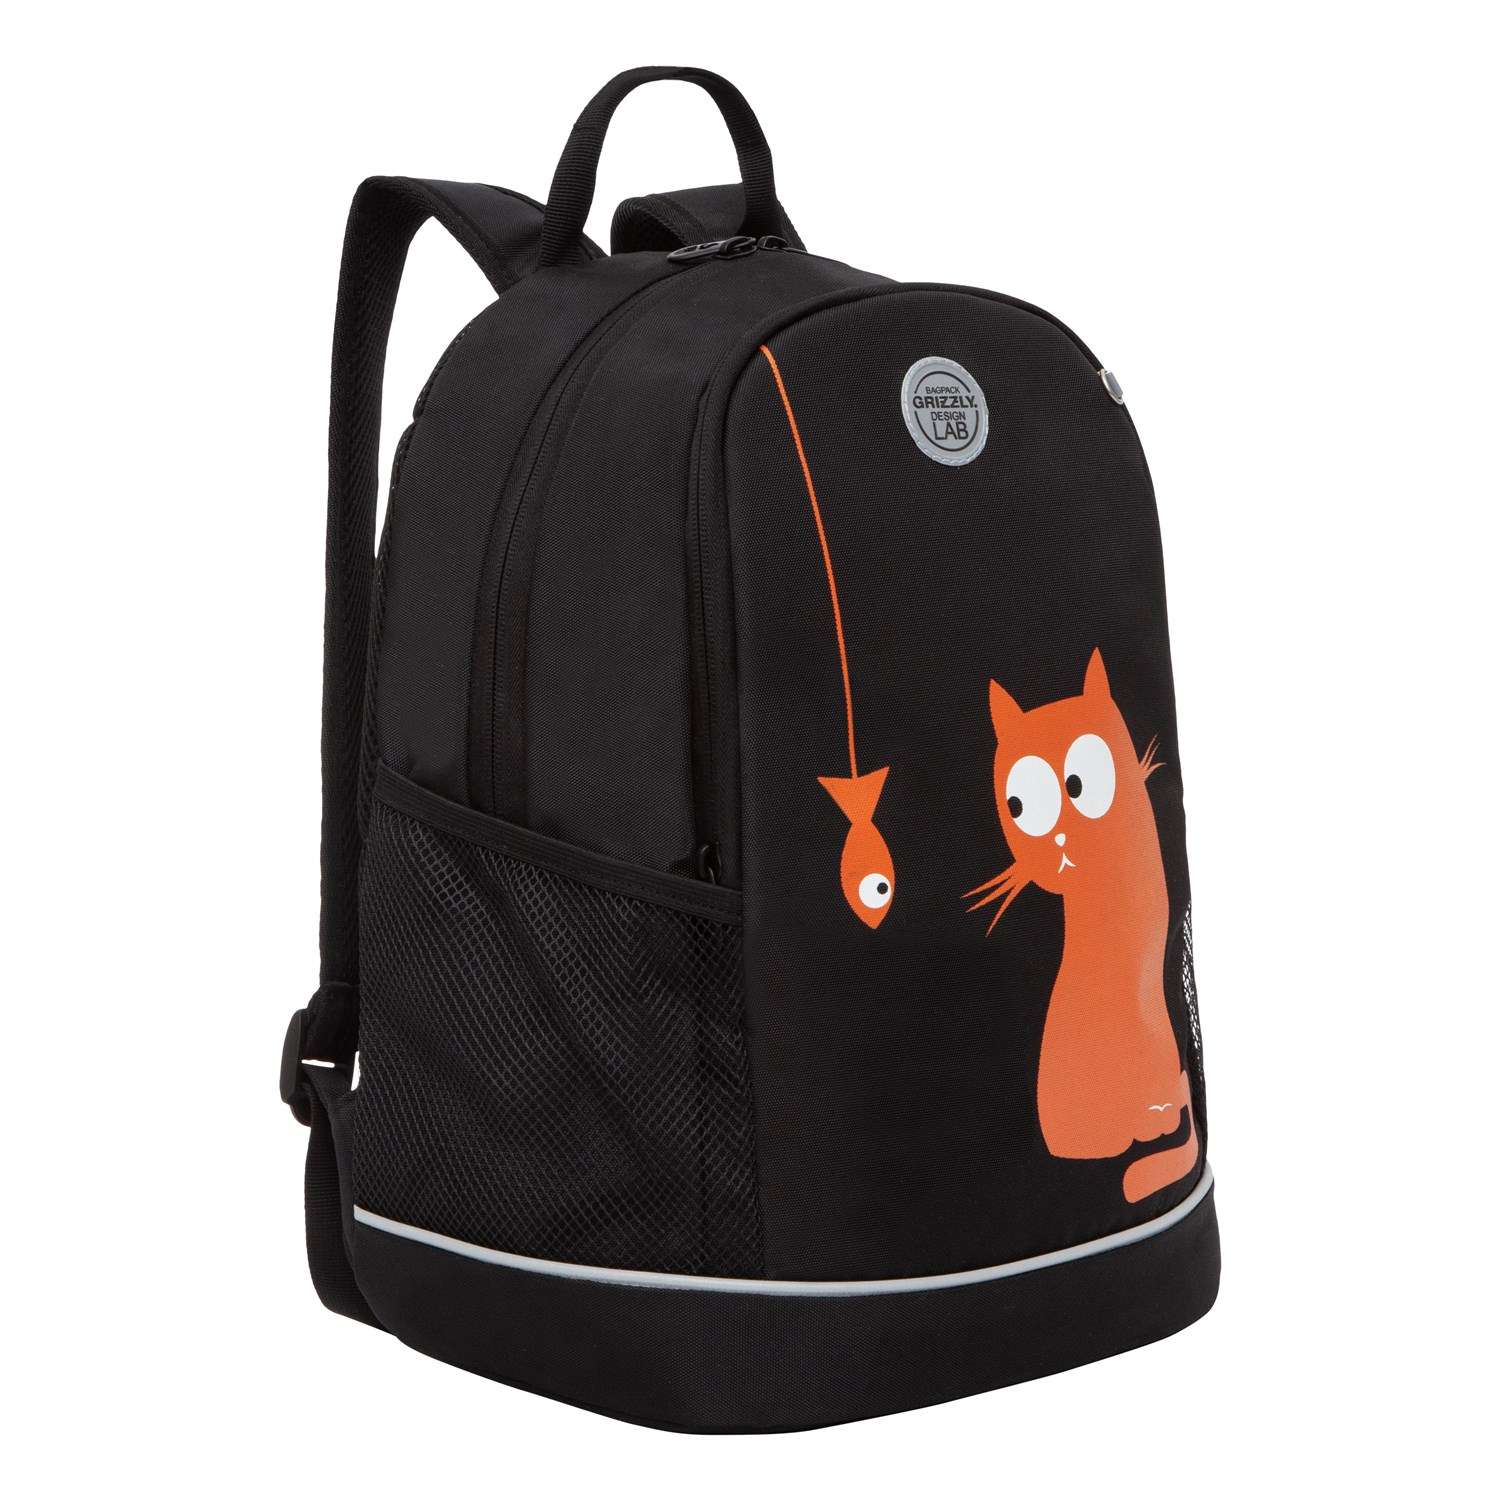 Рюкзак школьный Grizzly Черный-Оранжевый RG-263-4/4 - фото 1